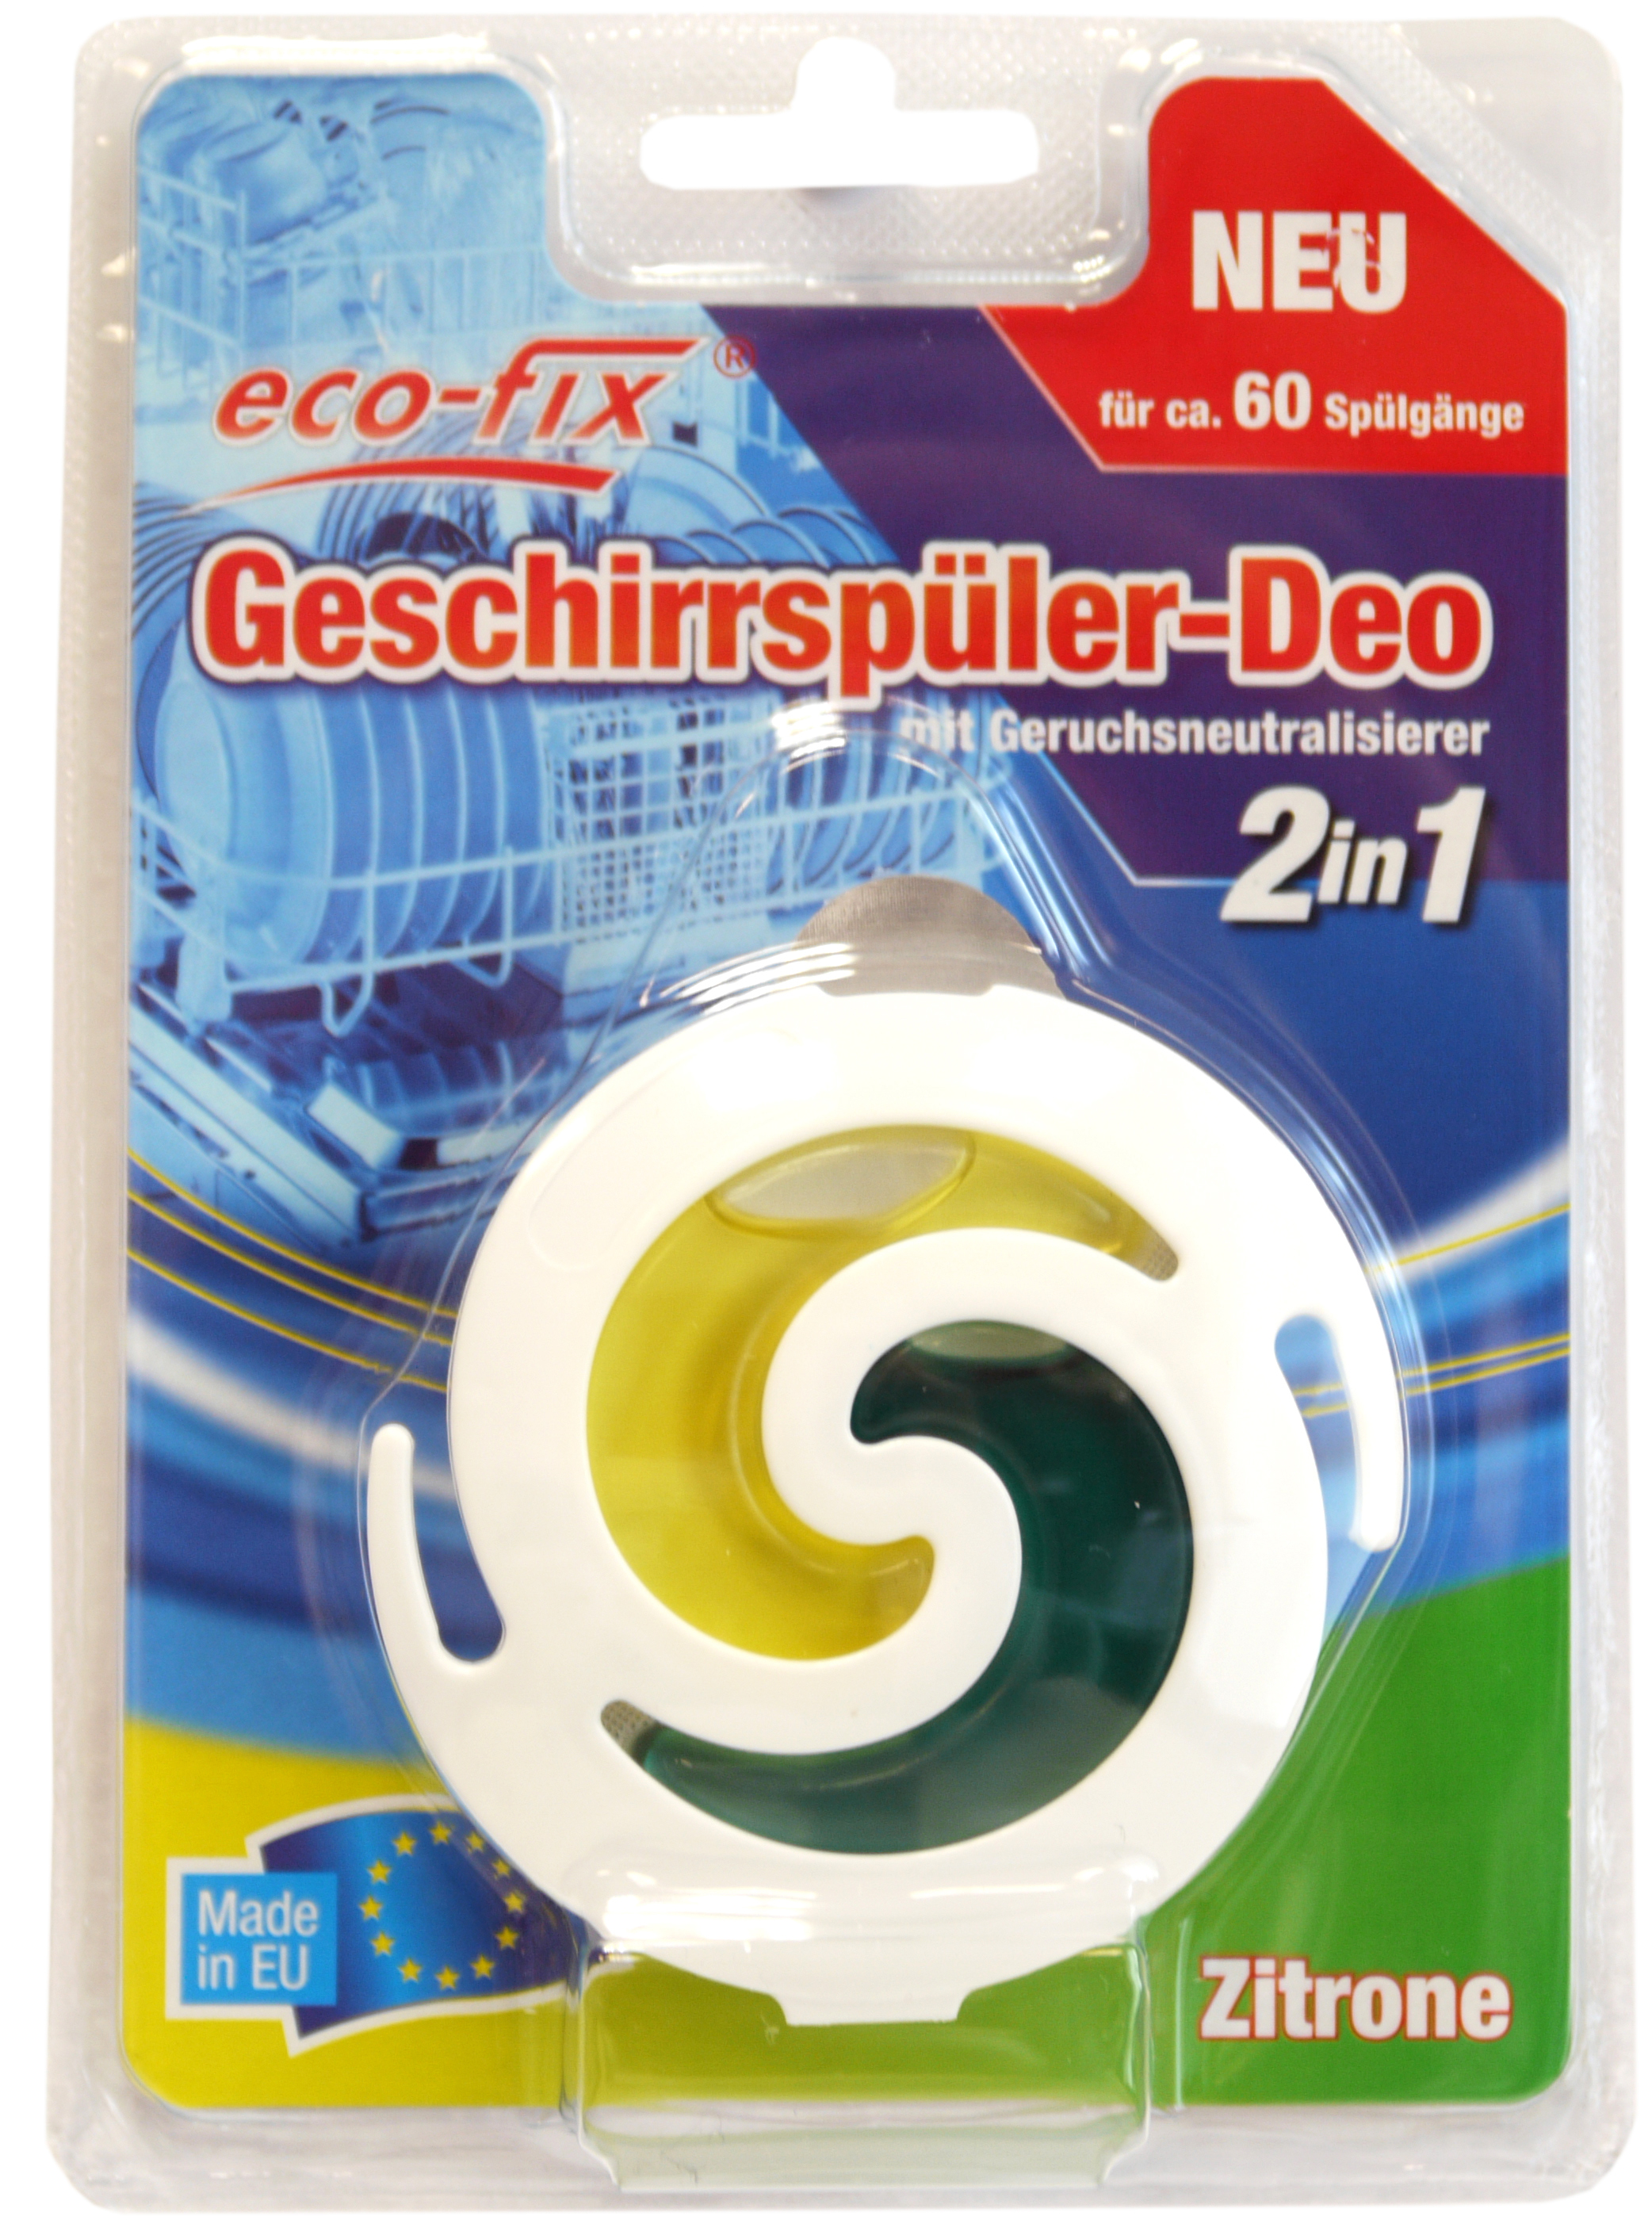 00525 - eco-fix Geschirrspüler-Deo, 2in1, Zitrone